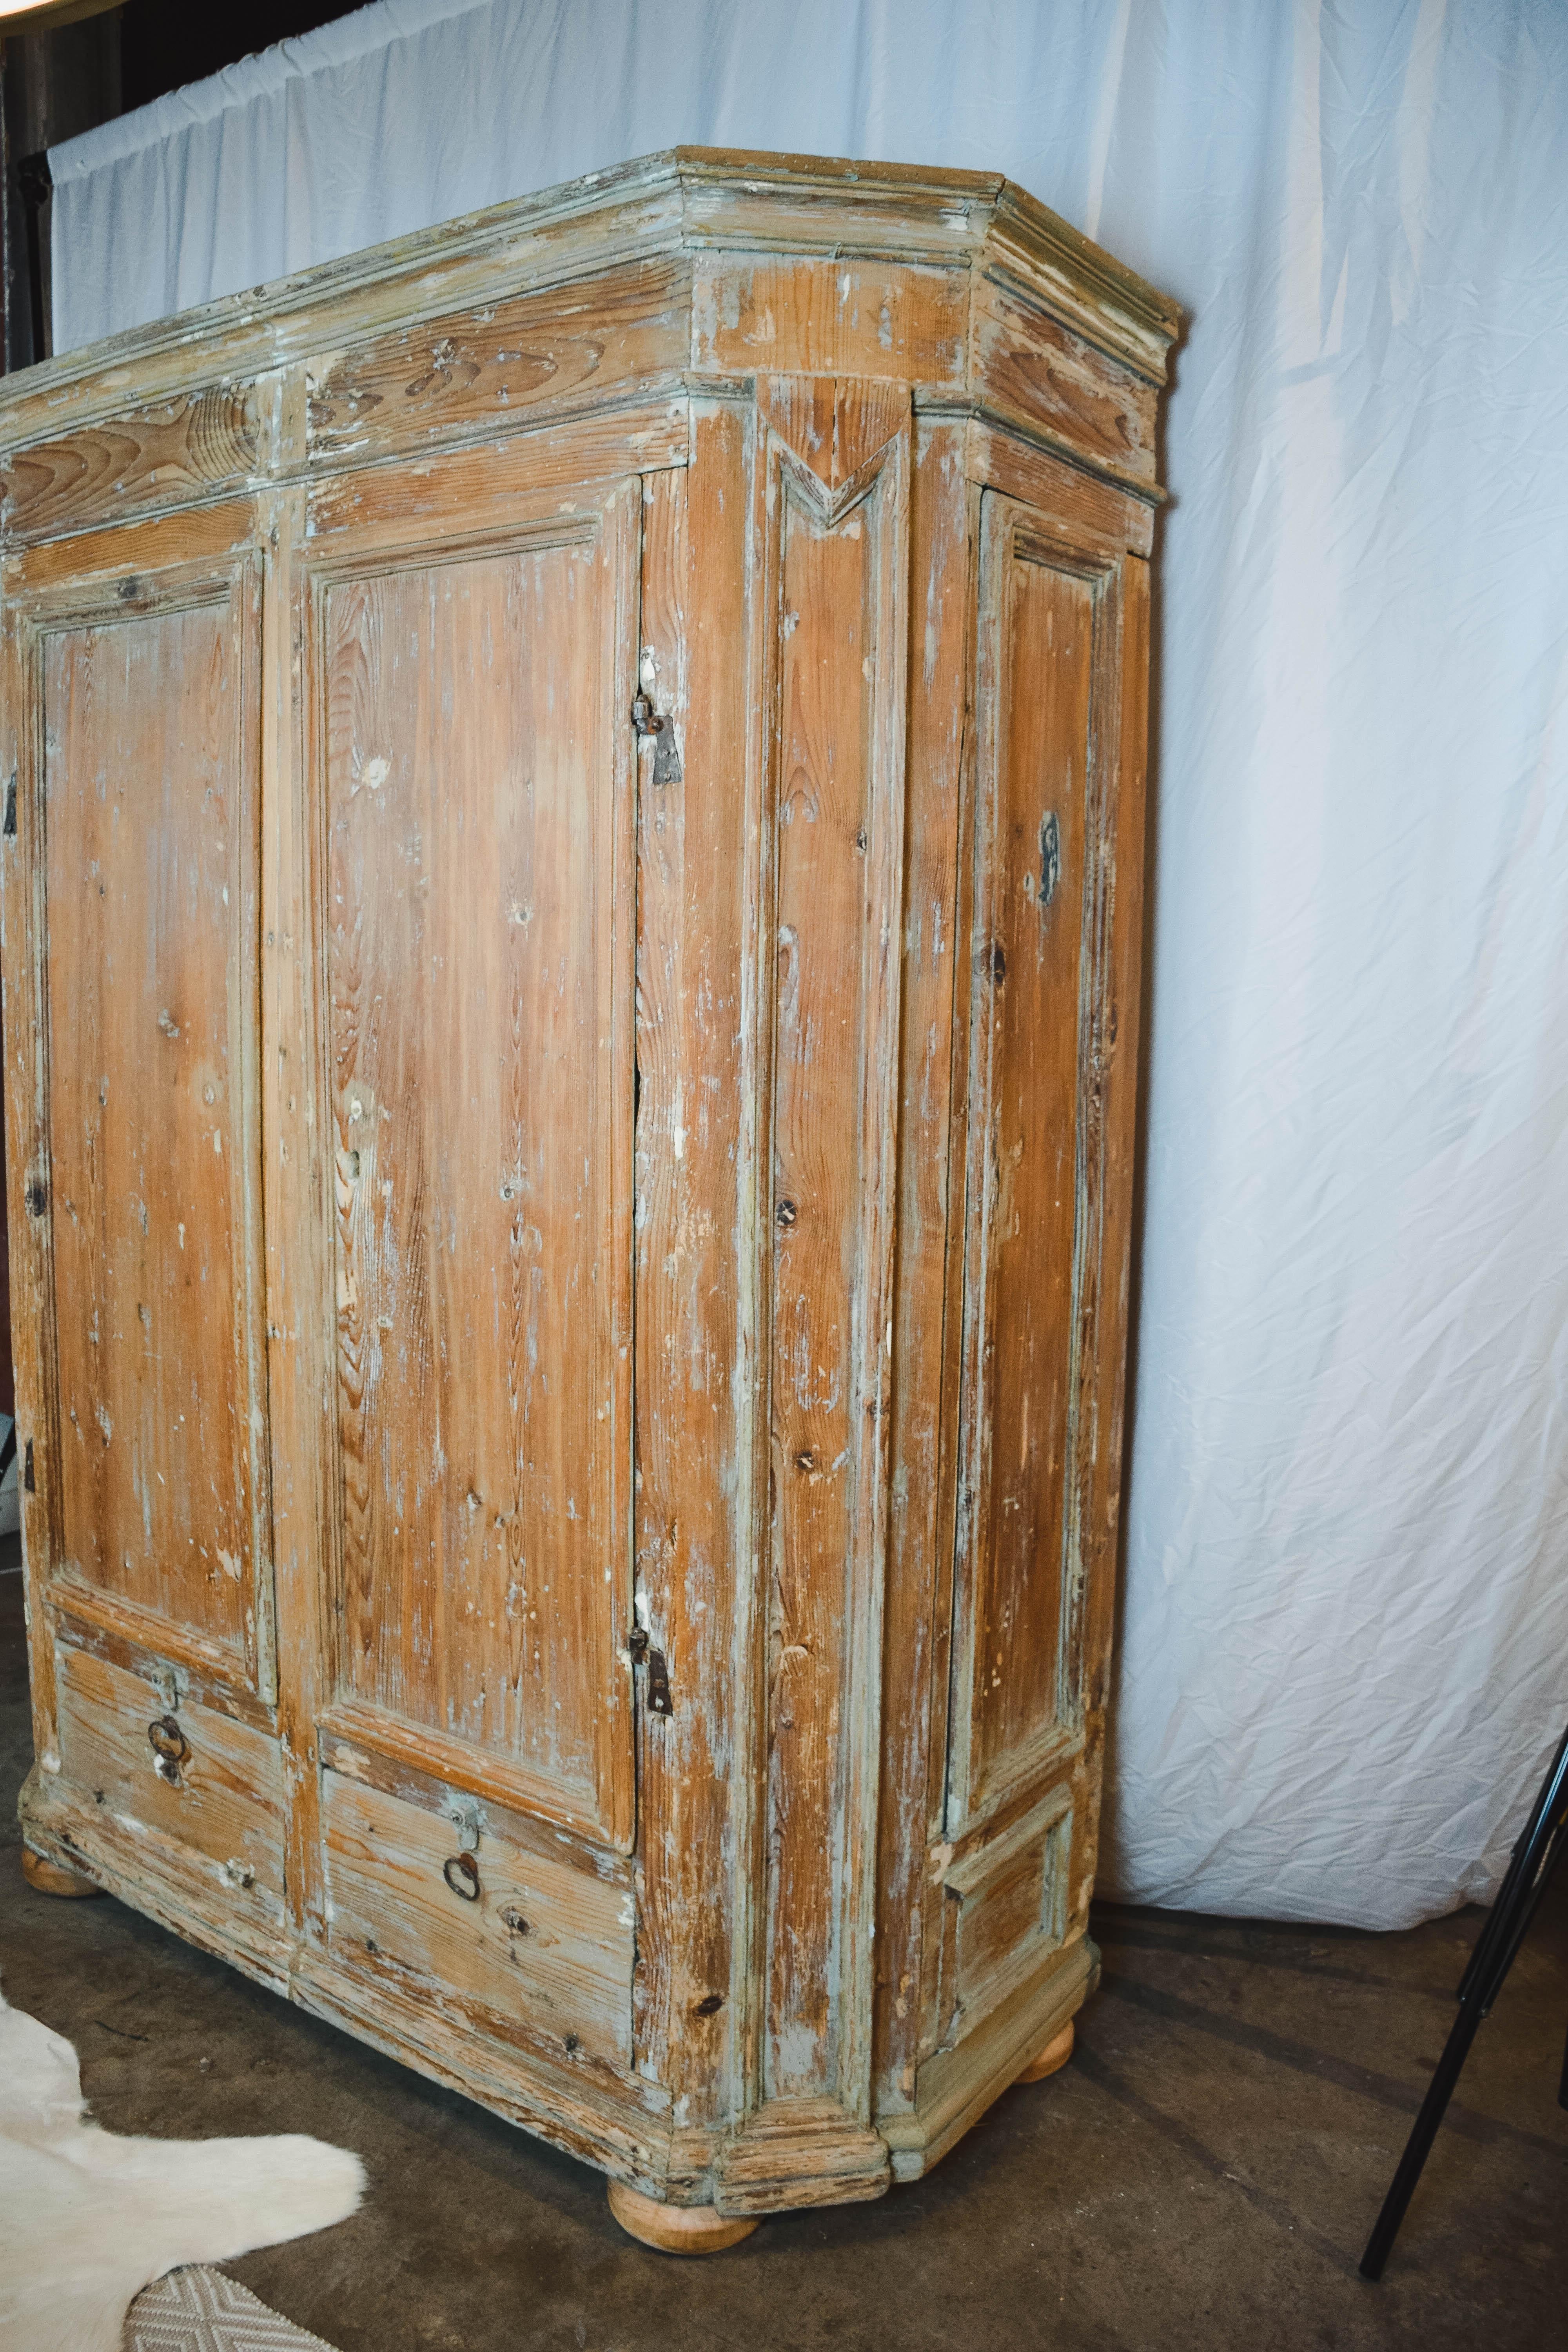 Cette armoire suédoise du XIXe siècle a été fabriquée à la main en pin massif et comporte deux grandes portes au-dessus de deux portes inférieures avec des poignées forgées à la main. Les deux portes inférieures semblent être des tiroirs, mais elles